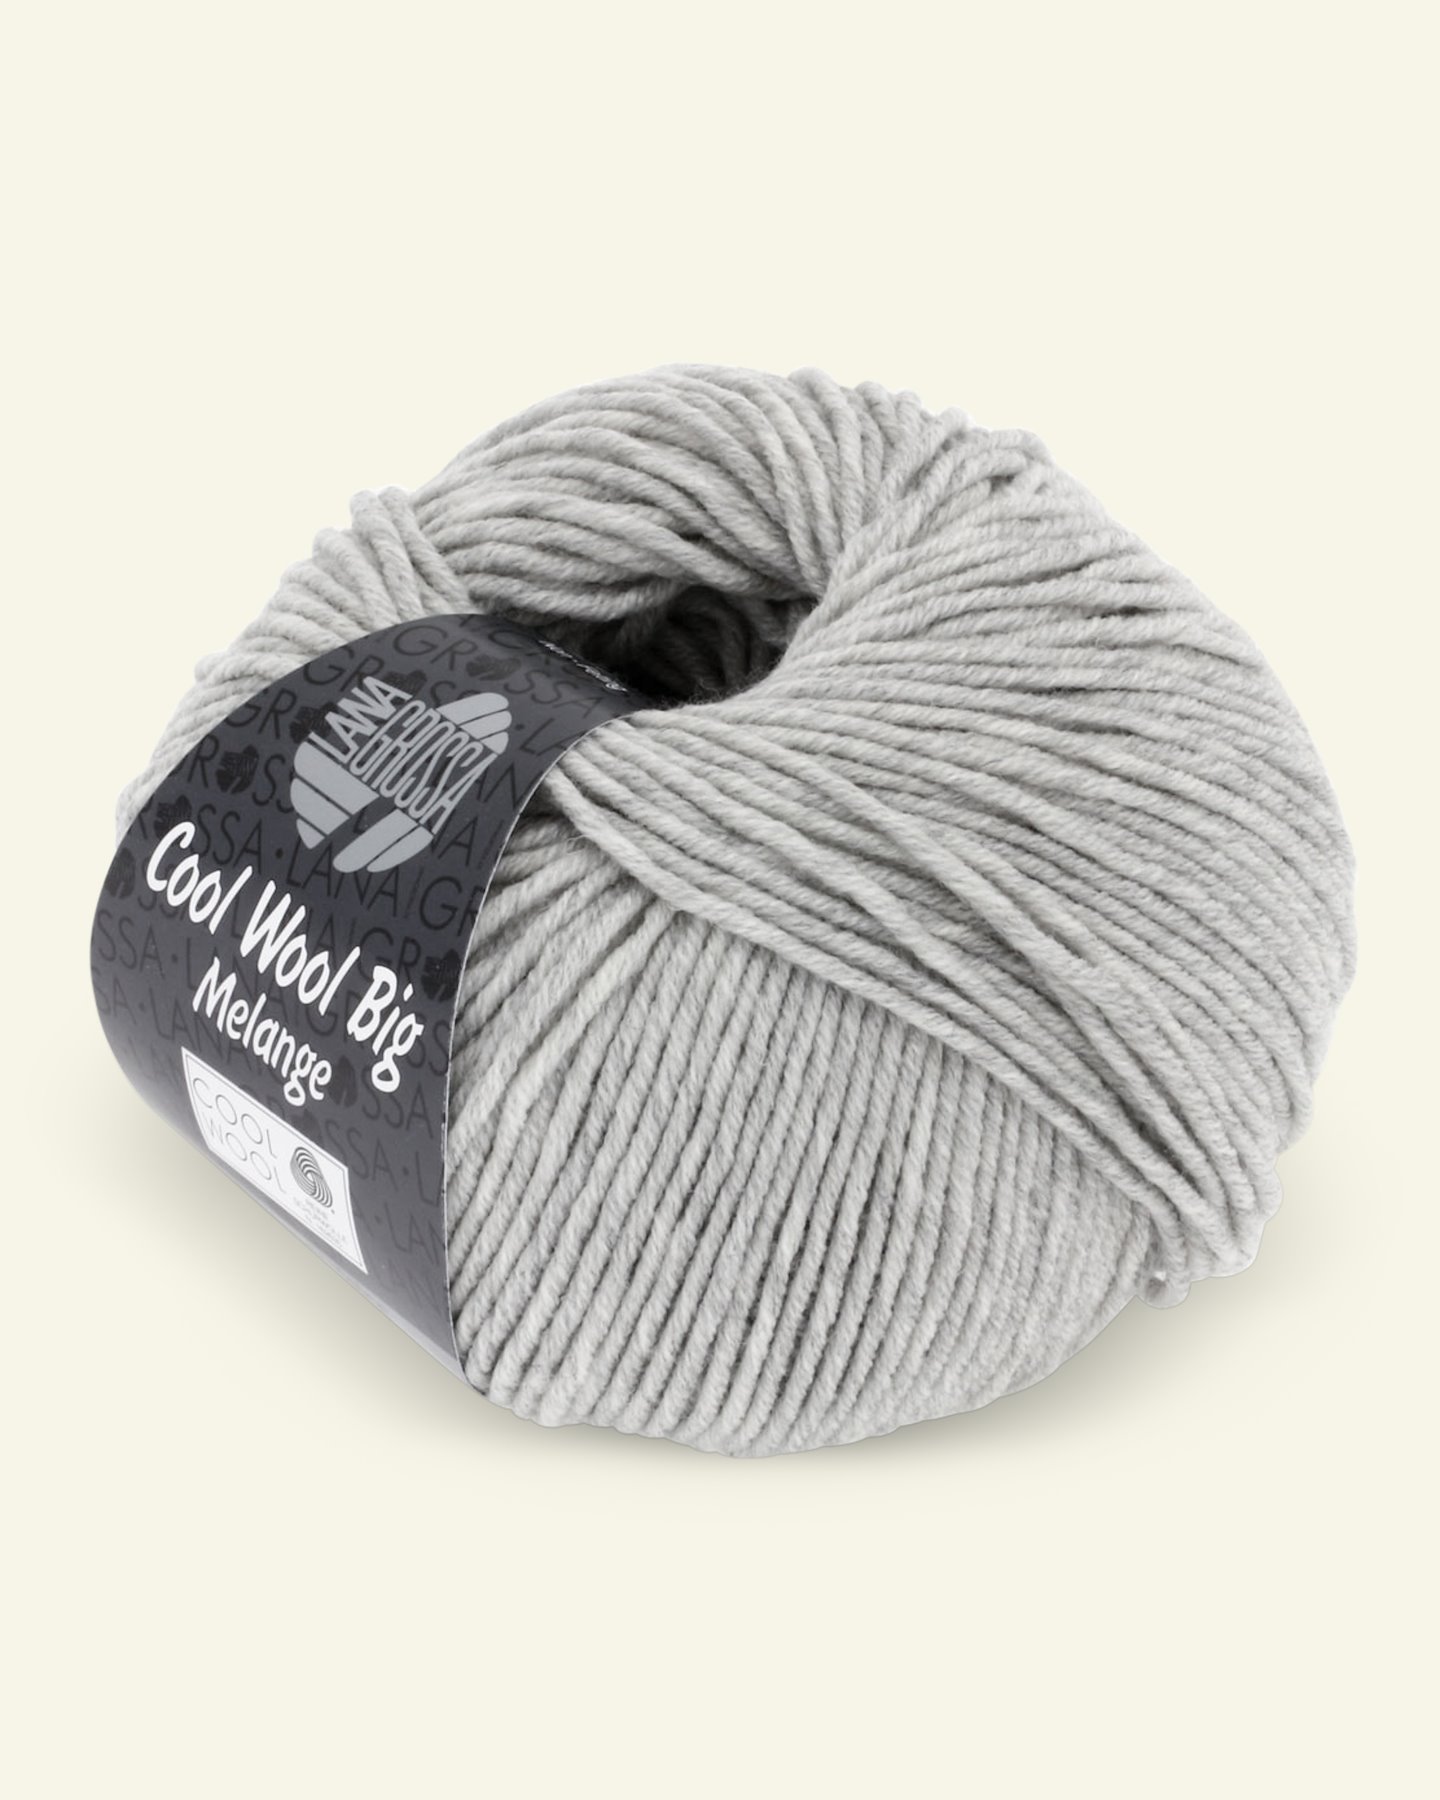 Lana Grossa, extrafin merinouldgarn "Cool Wool Big", lys grå mel. 90001085_pack